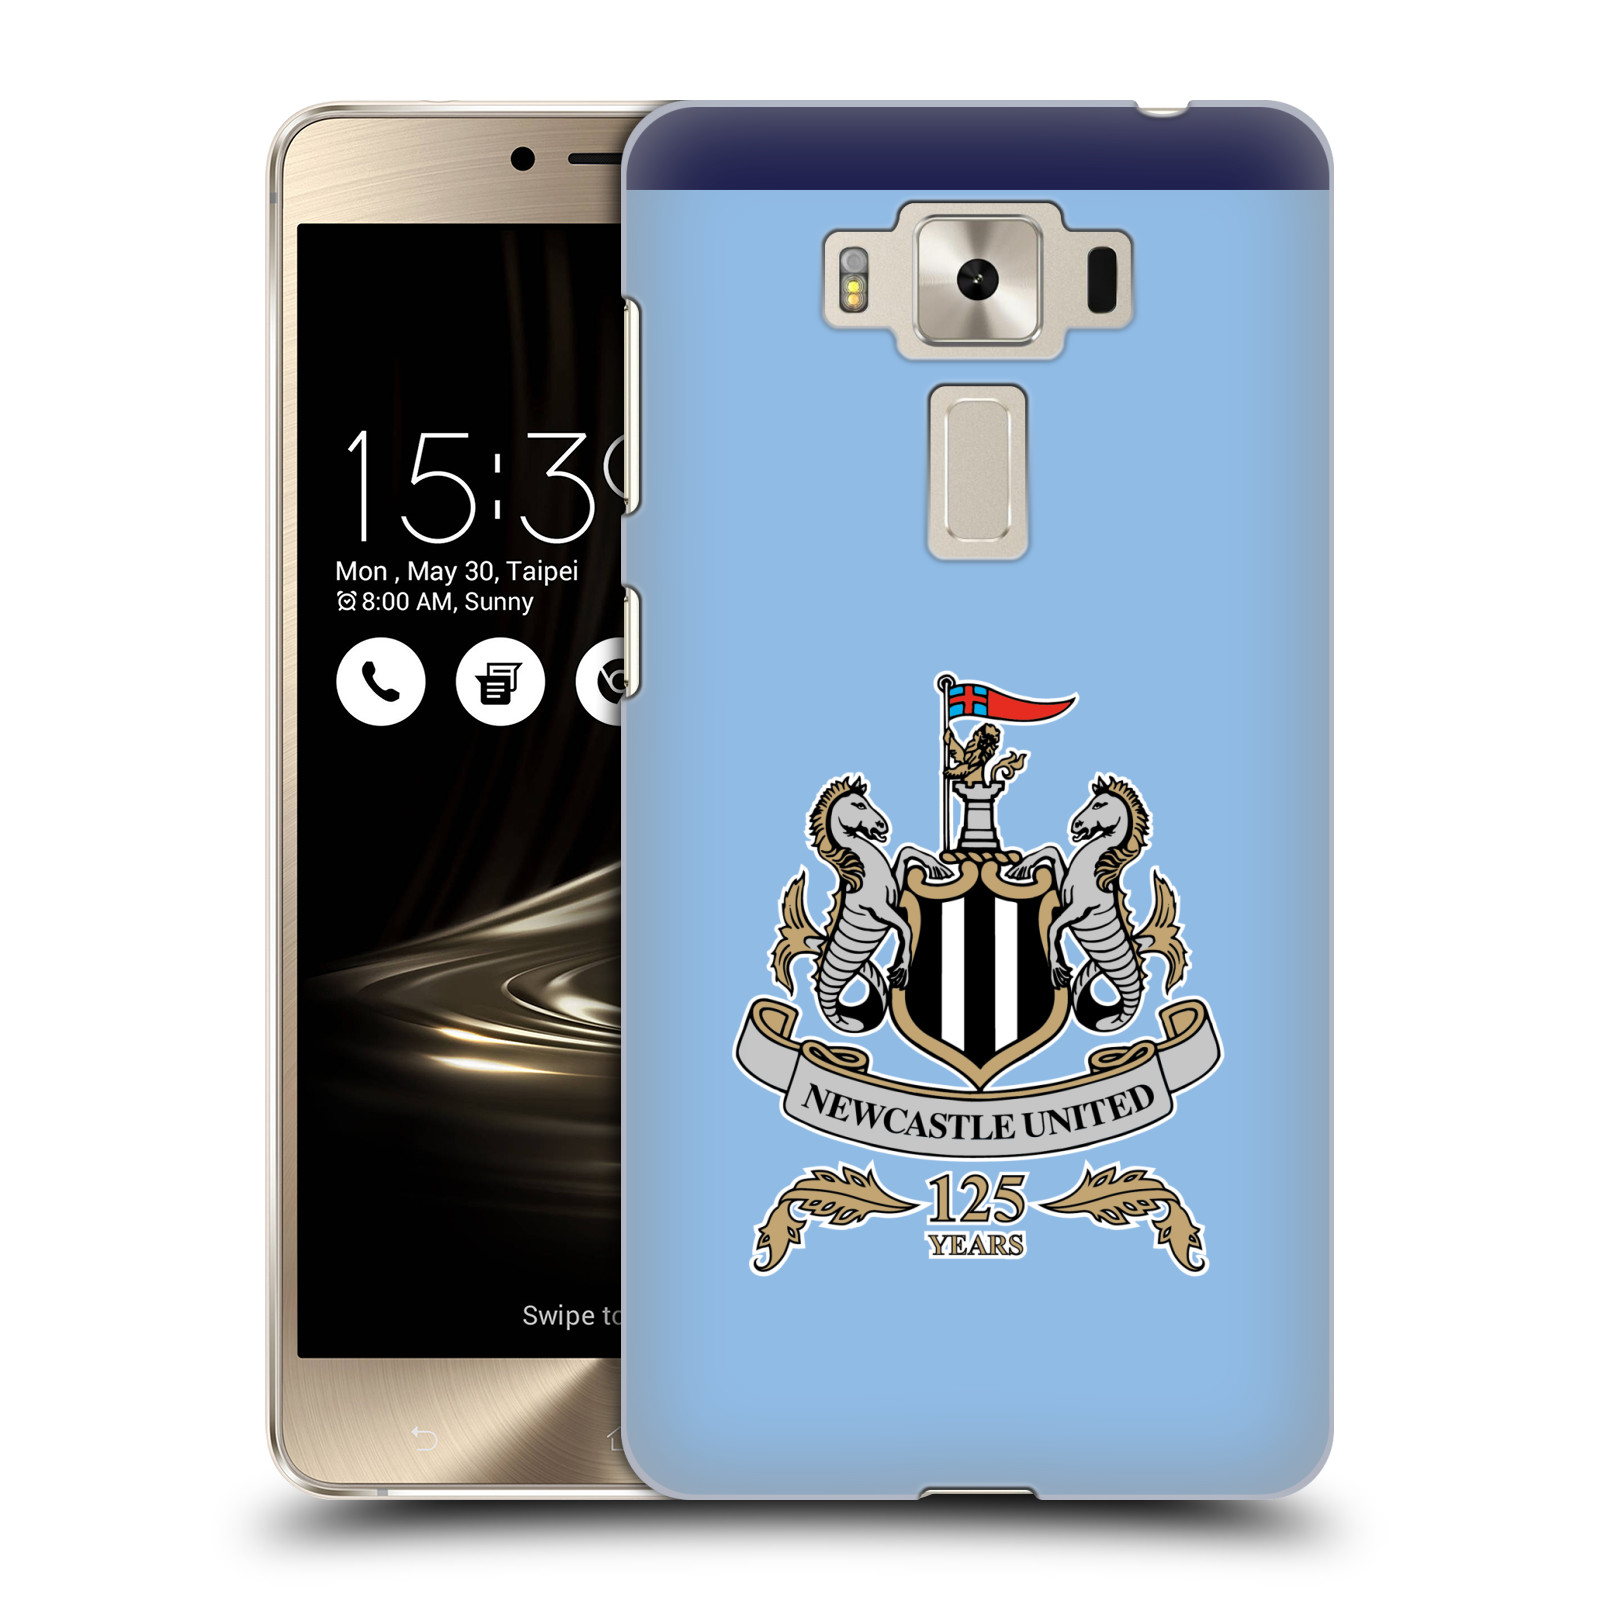 HEAD CASE plastový obal na mobil Asus Zenfone 3 DELUXE ZS550KL Fotbalový klub Newcastle United FC velký znak na modrém pozadí